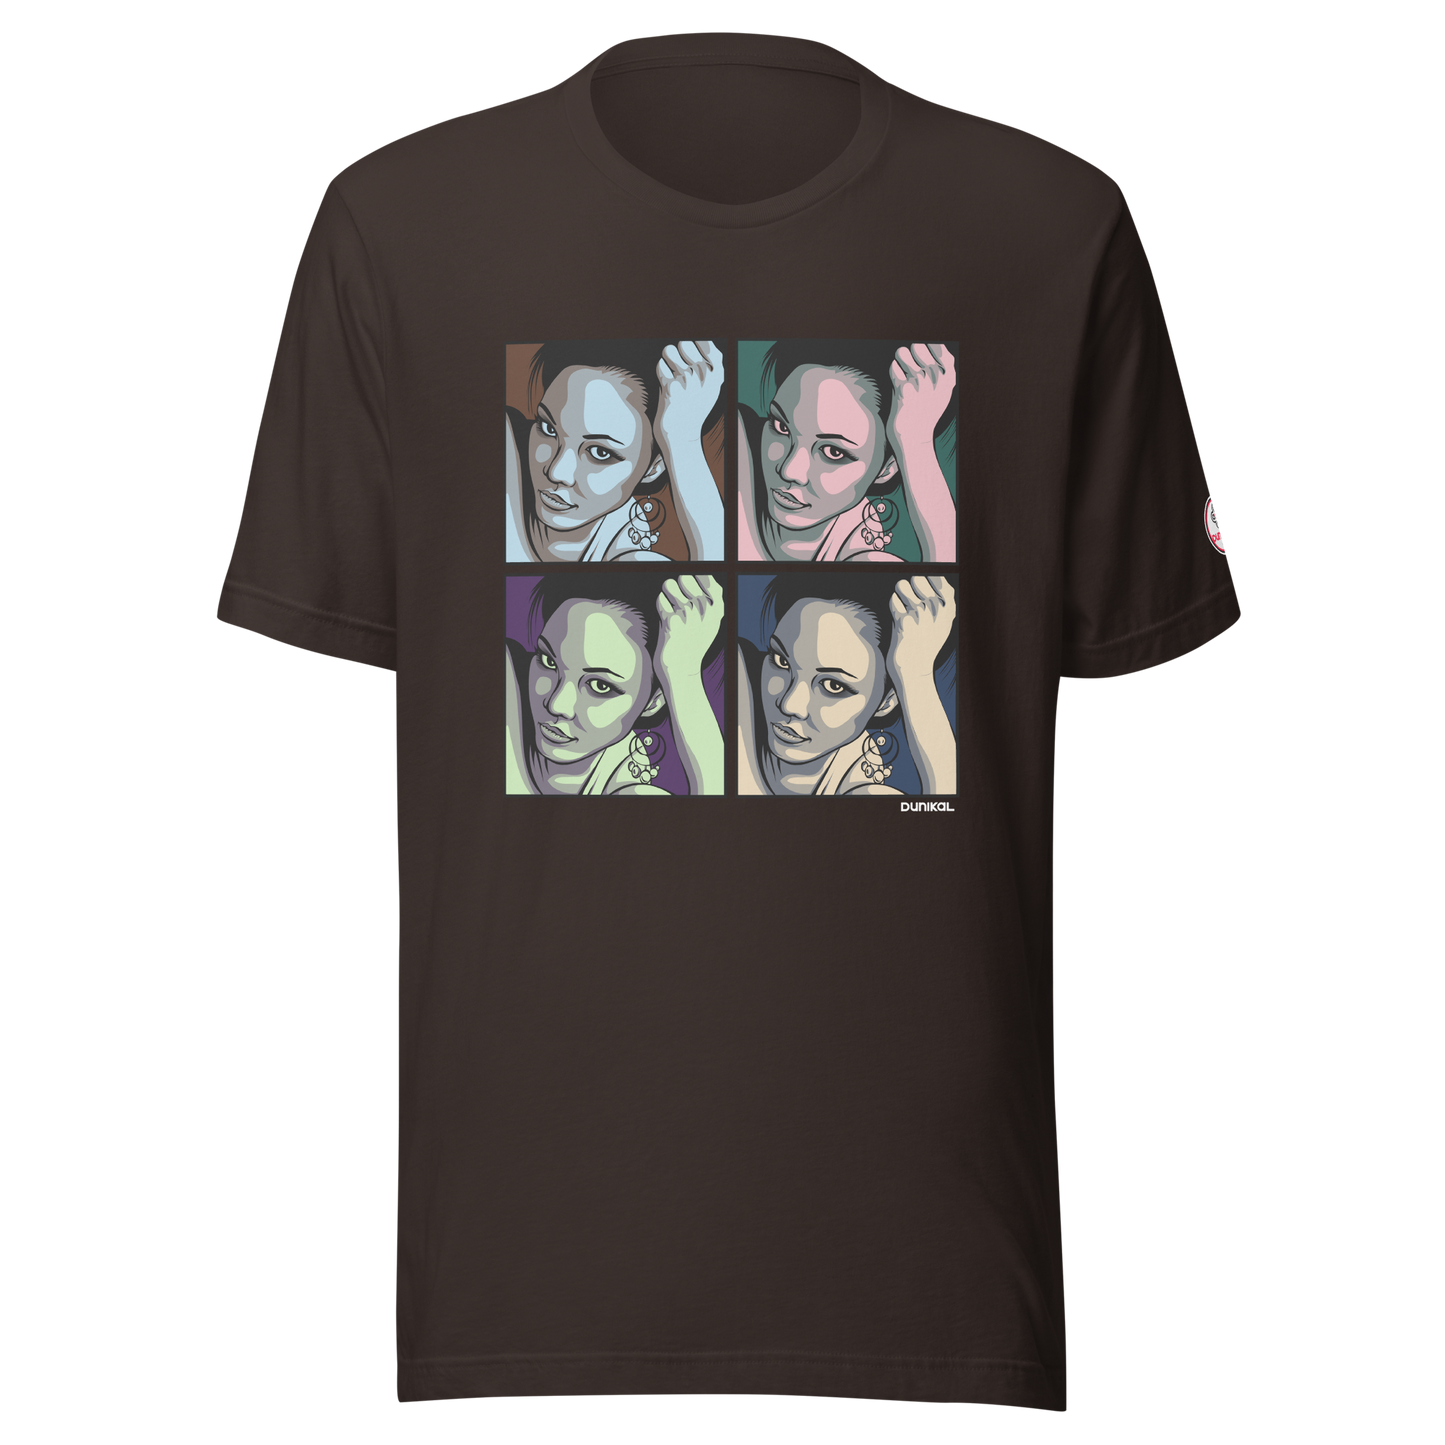 男女皆宜的 T 恤 ❯ 蛇蝎美人穿 Crayola ❯ 四个季节